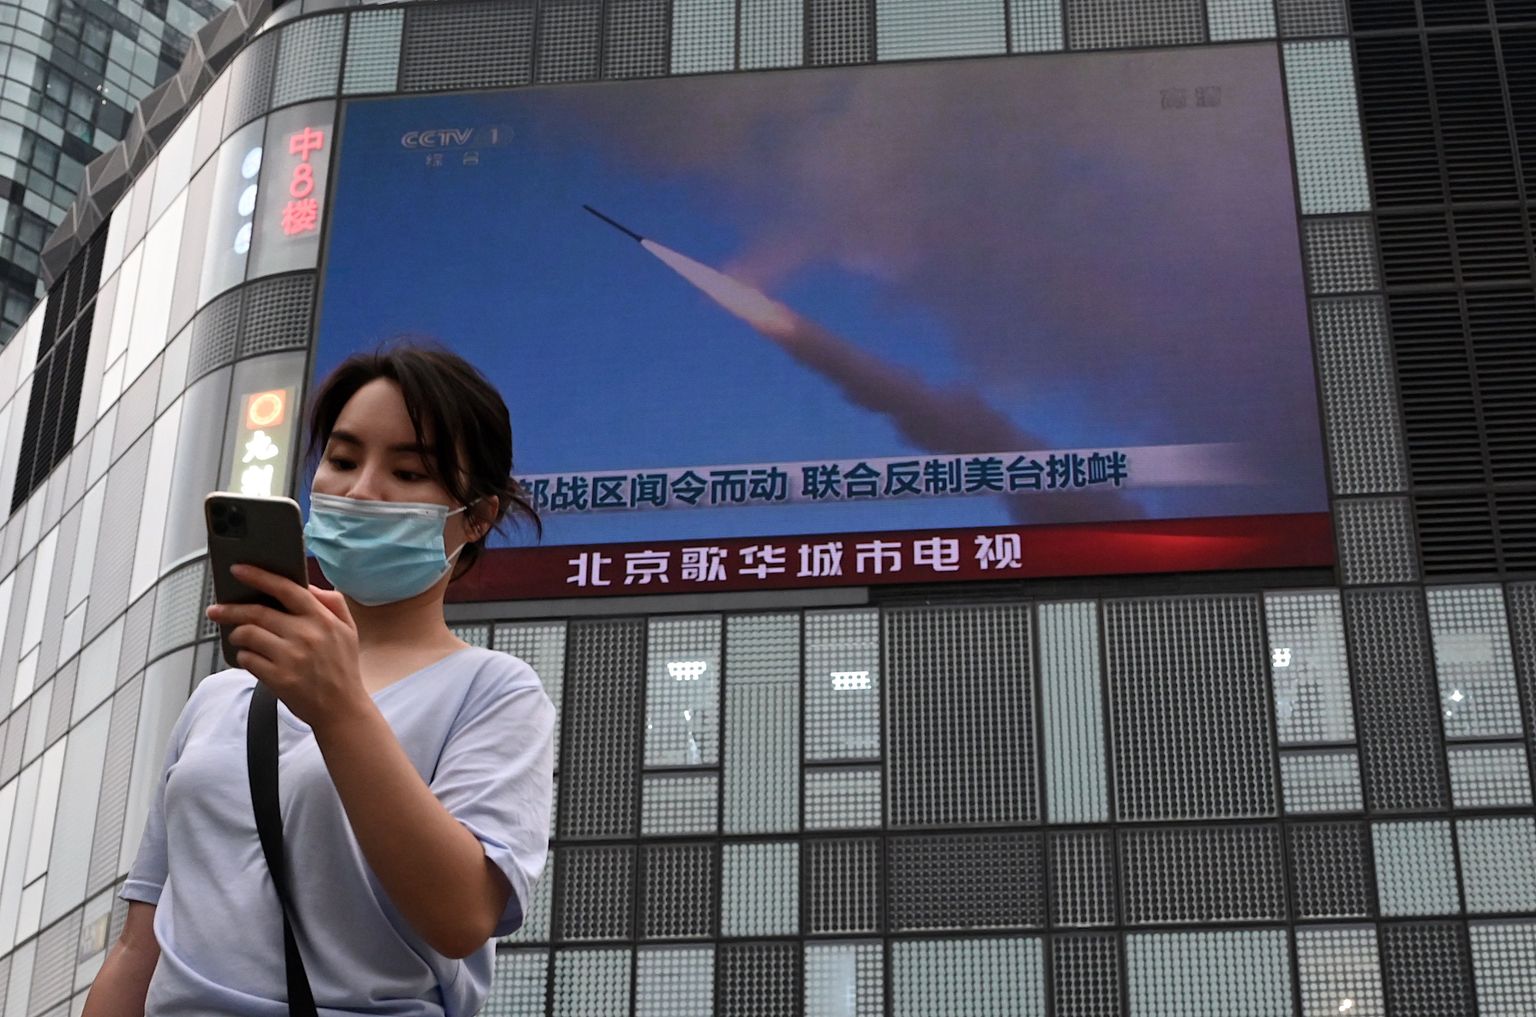 Naine Pekingis Taiwani saare läheduses peetavaid militaarõppuseid näitava ekraani ees.